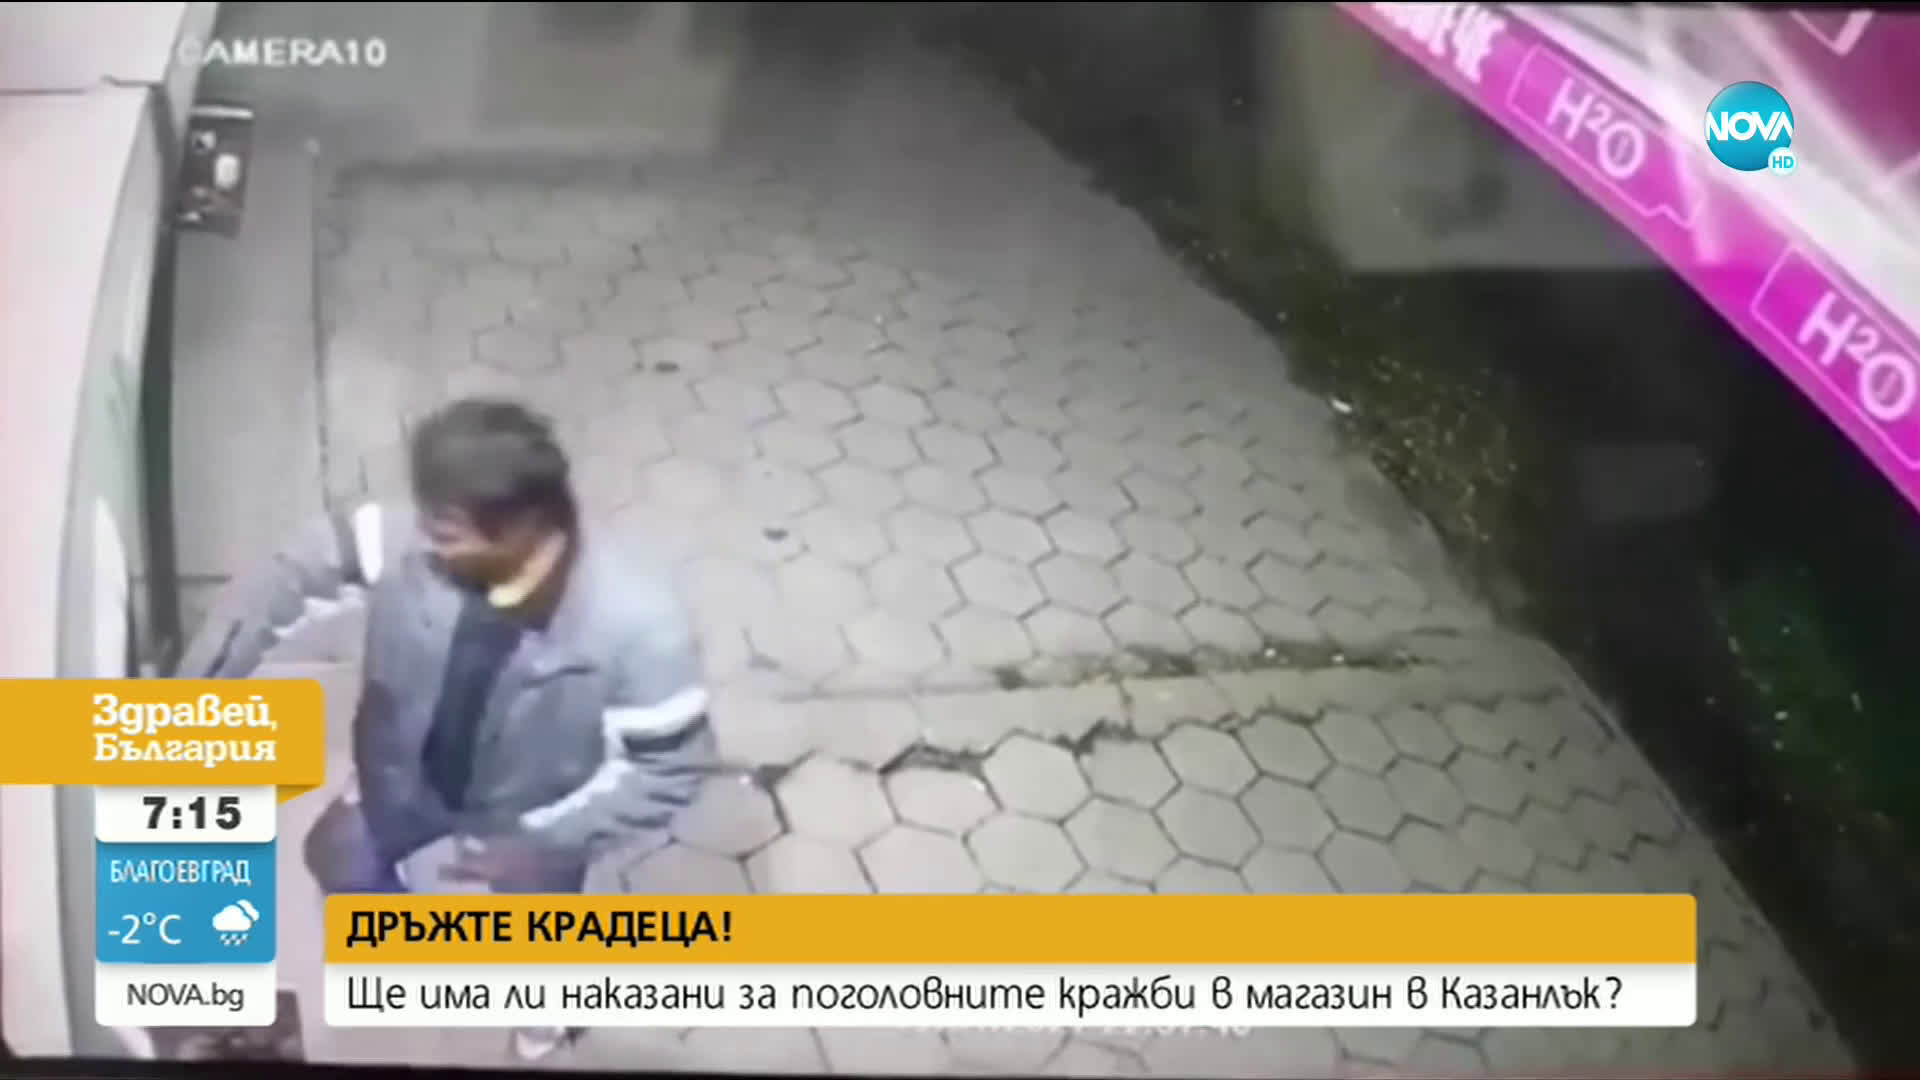 „Дръжте крадеца”: Ще има ли наказани за непрестанните кражби от магазин в Казанлък?